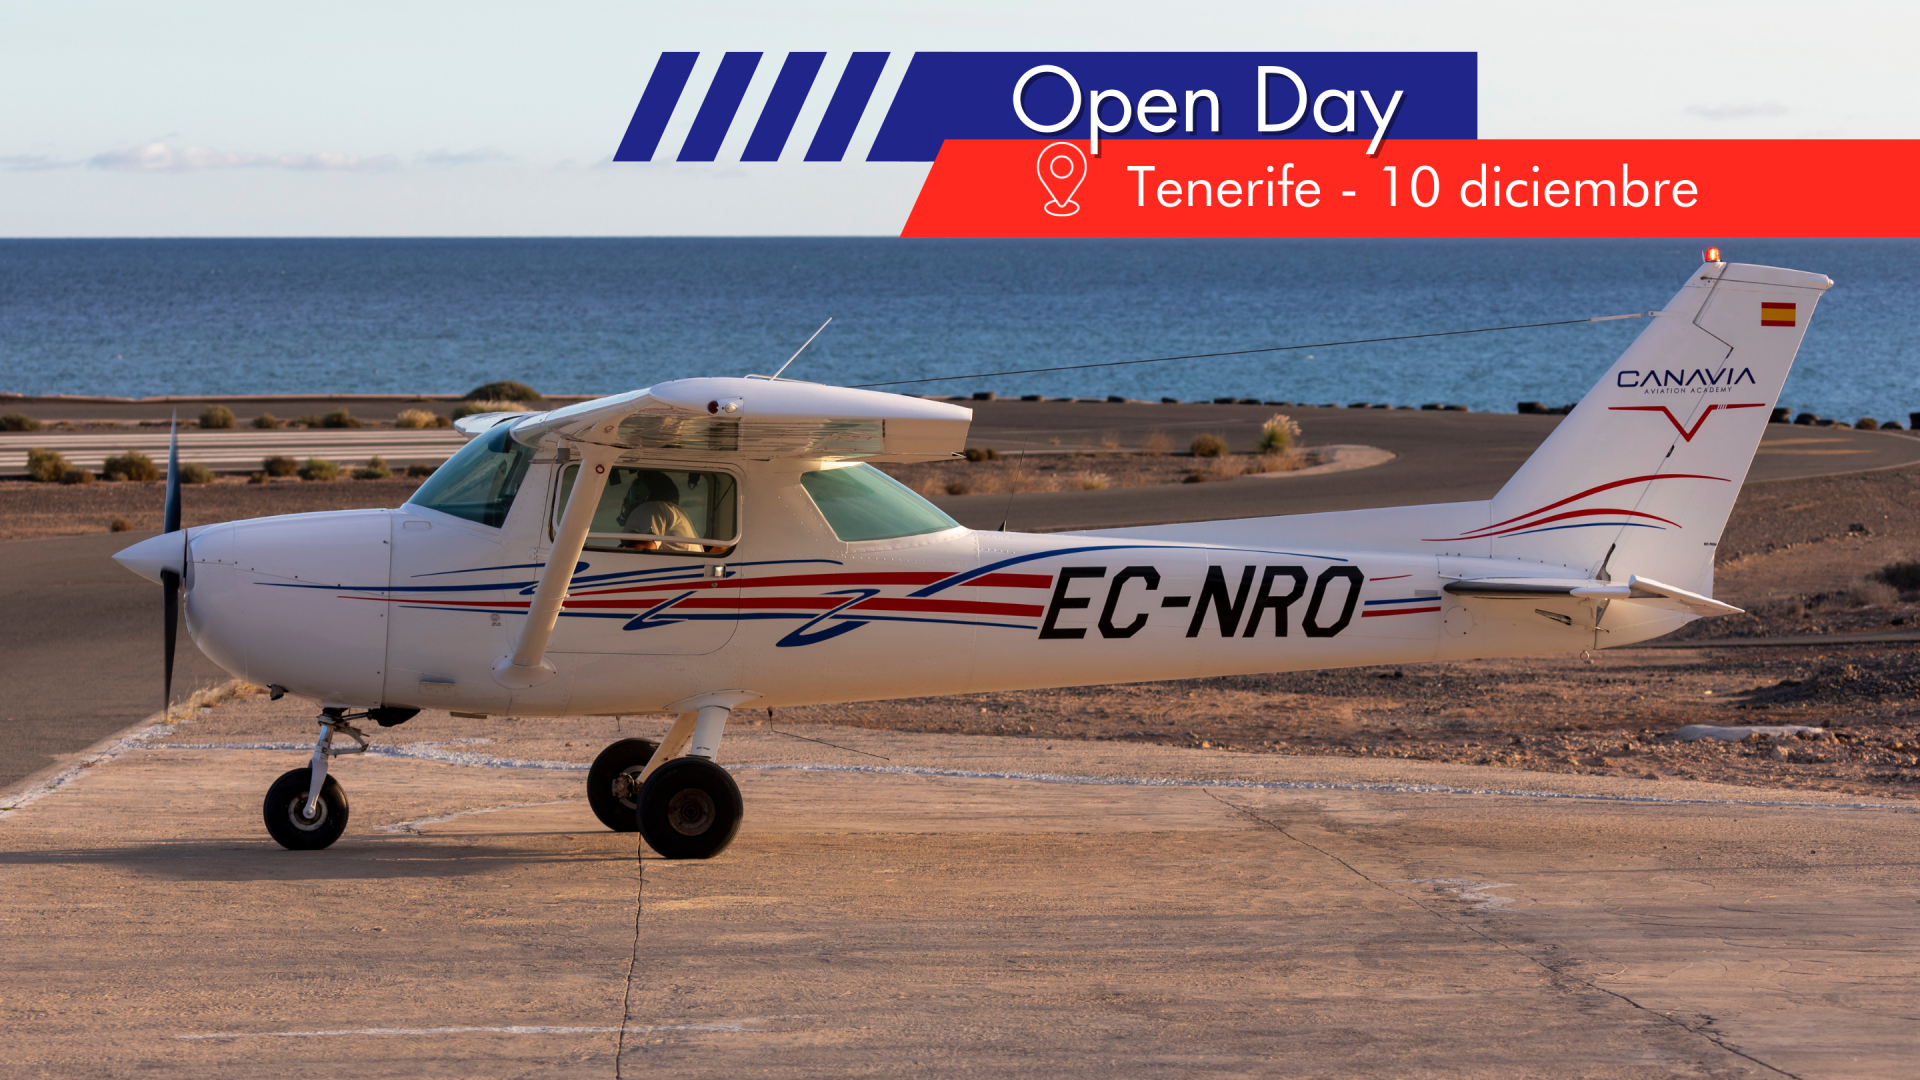 Nuevo Open Day en Tenerife - 10 diciembre